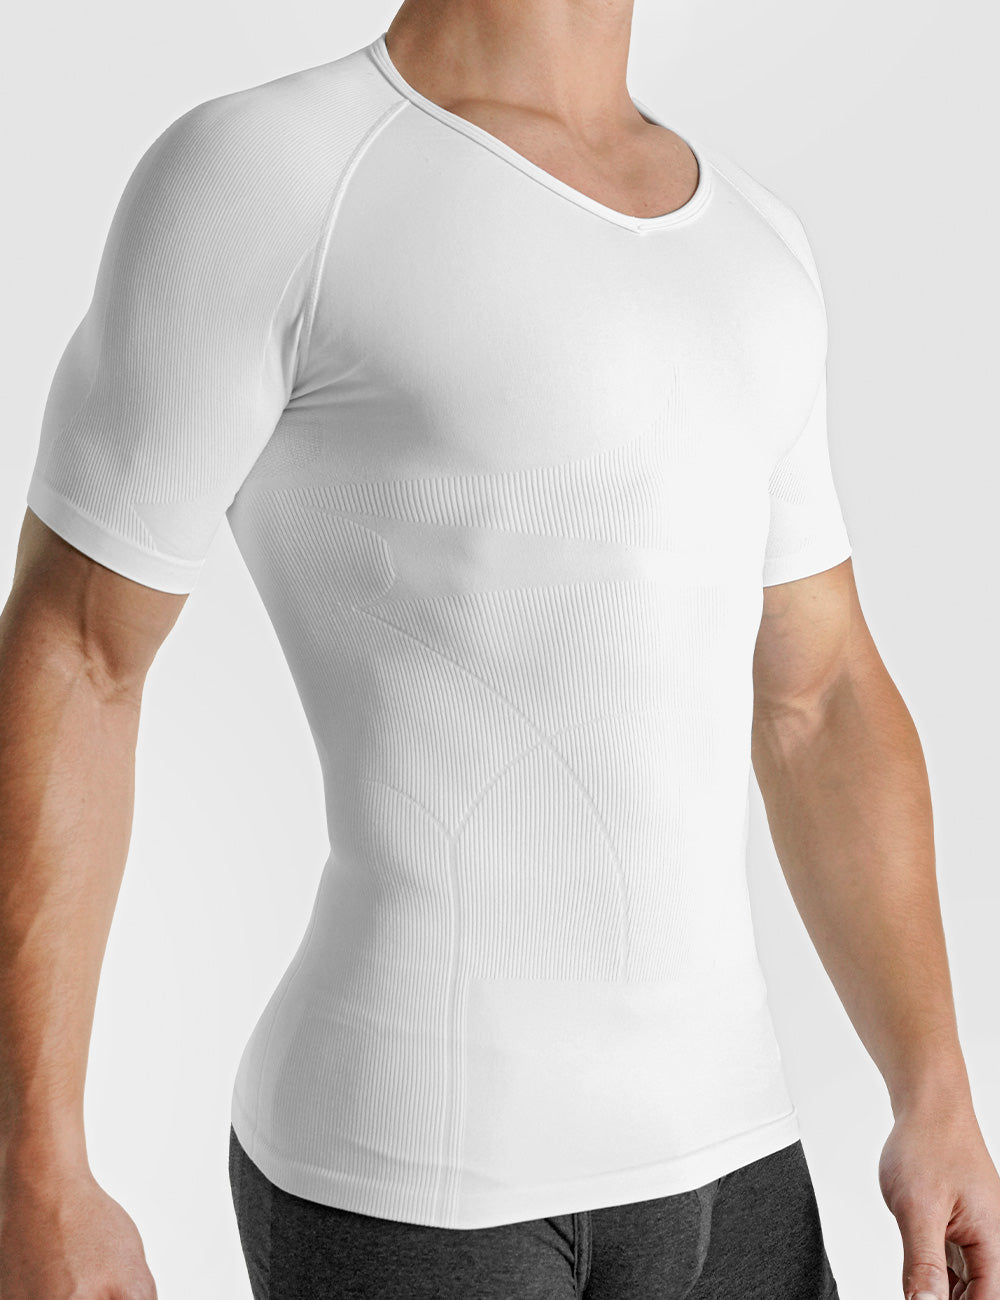 Shoulder Padded Compression T-Shirt Rounderbum